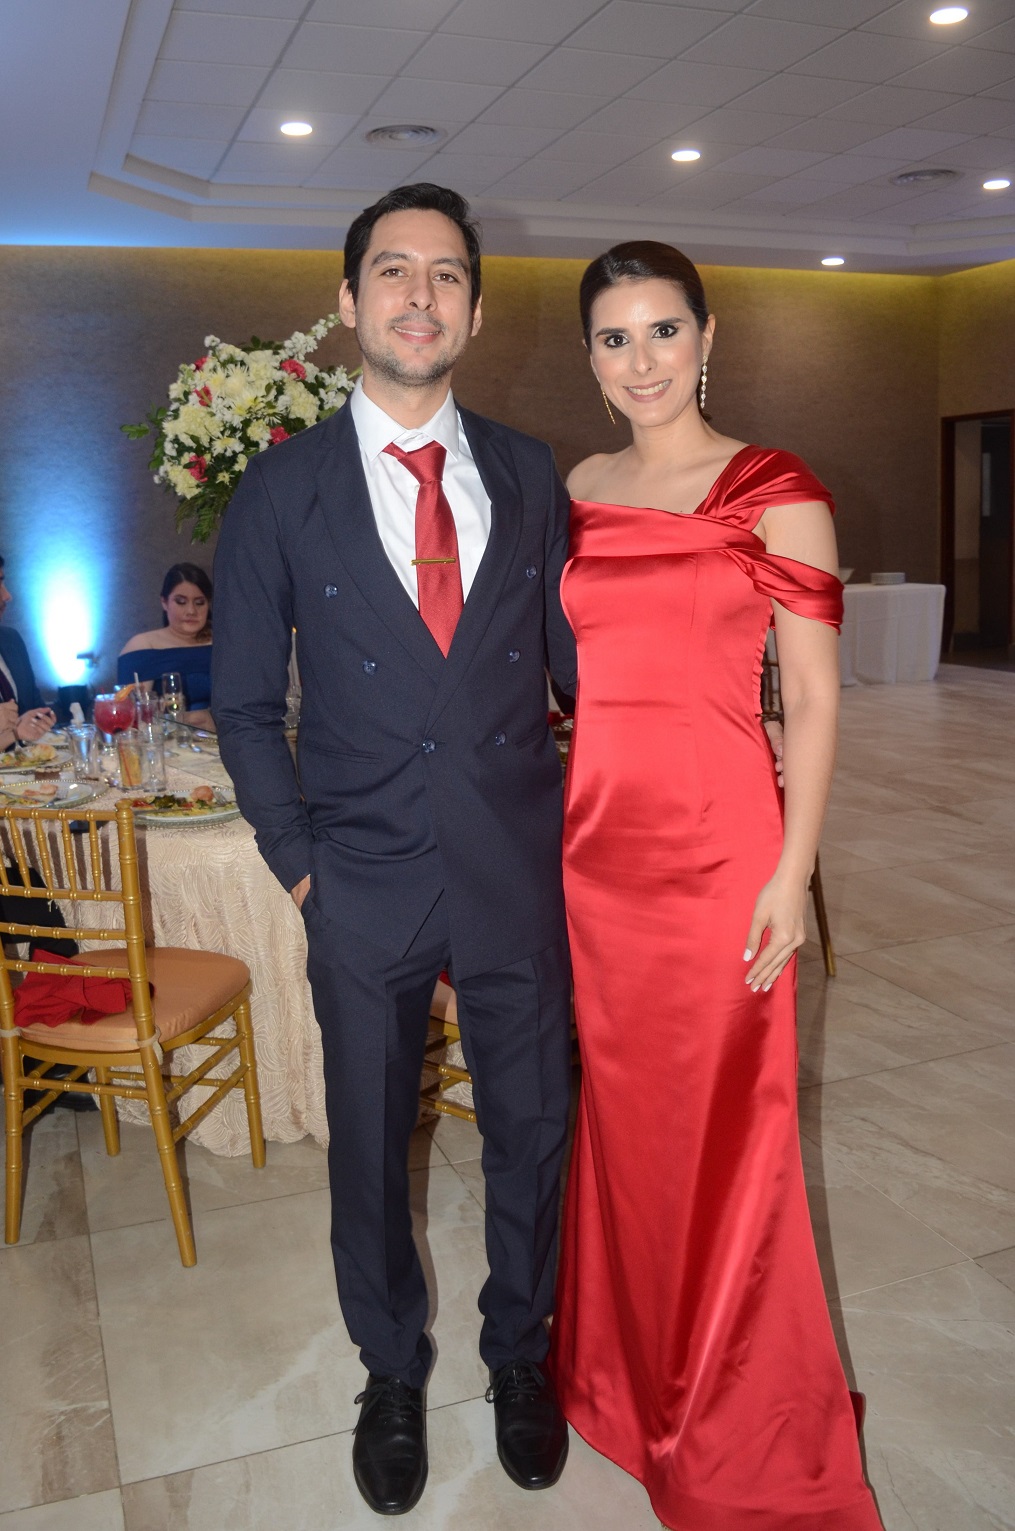 La boda de Paola Rebeca Fúnez y Raúl Humberto Fuentes un recuerdo memorable